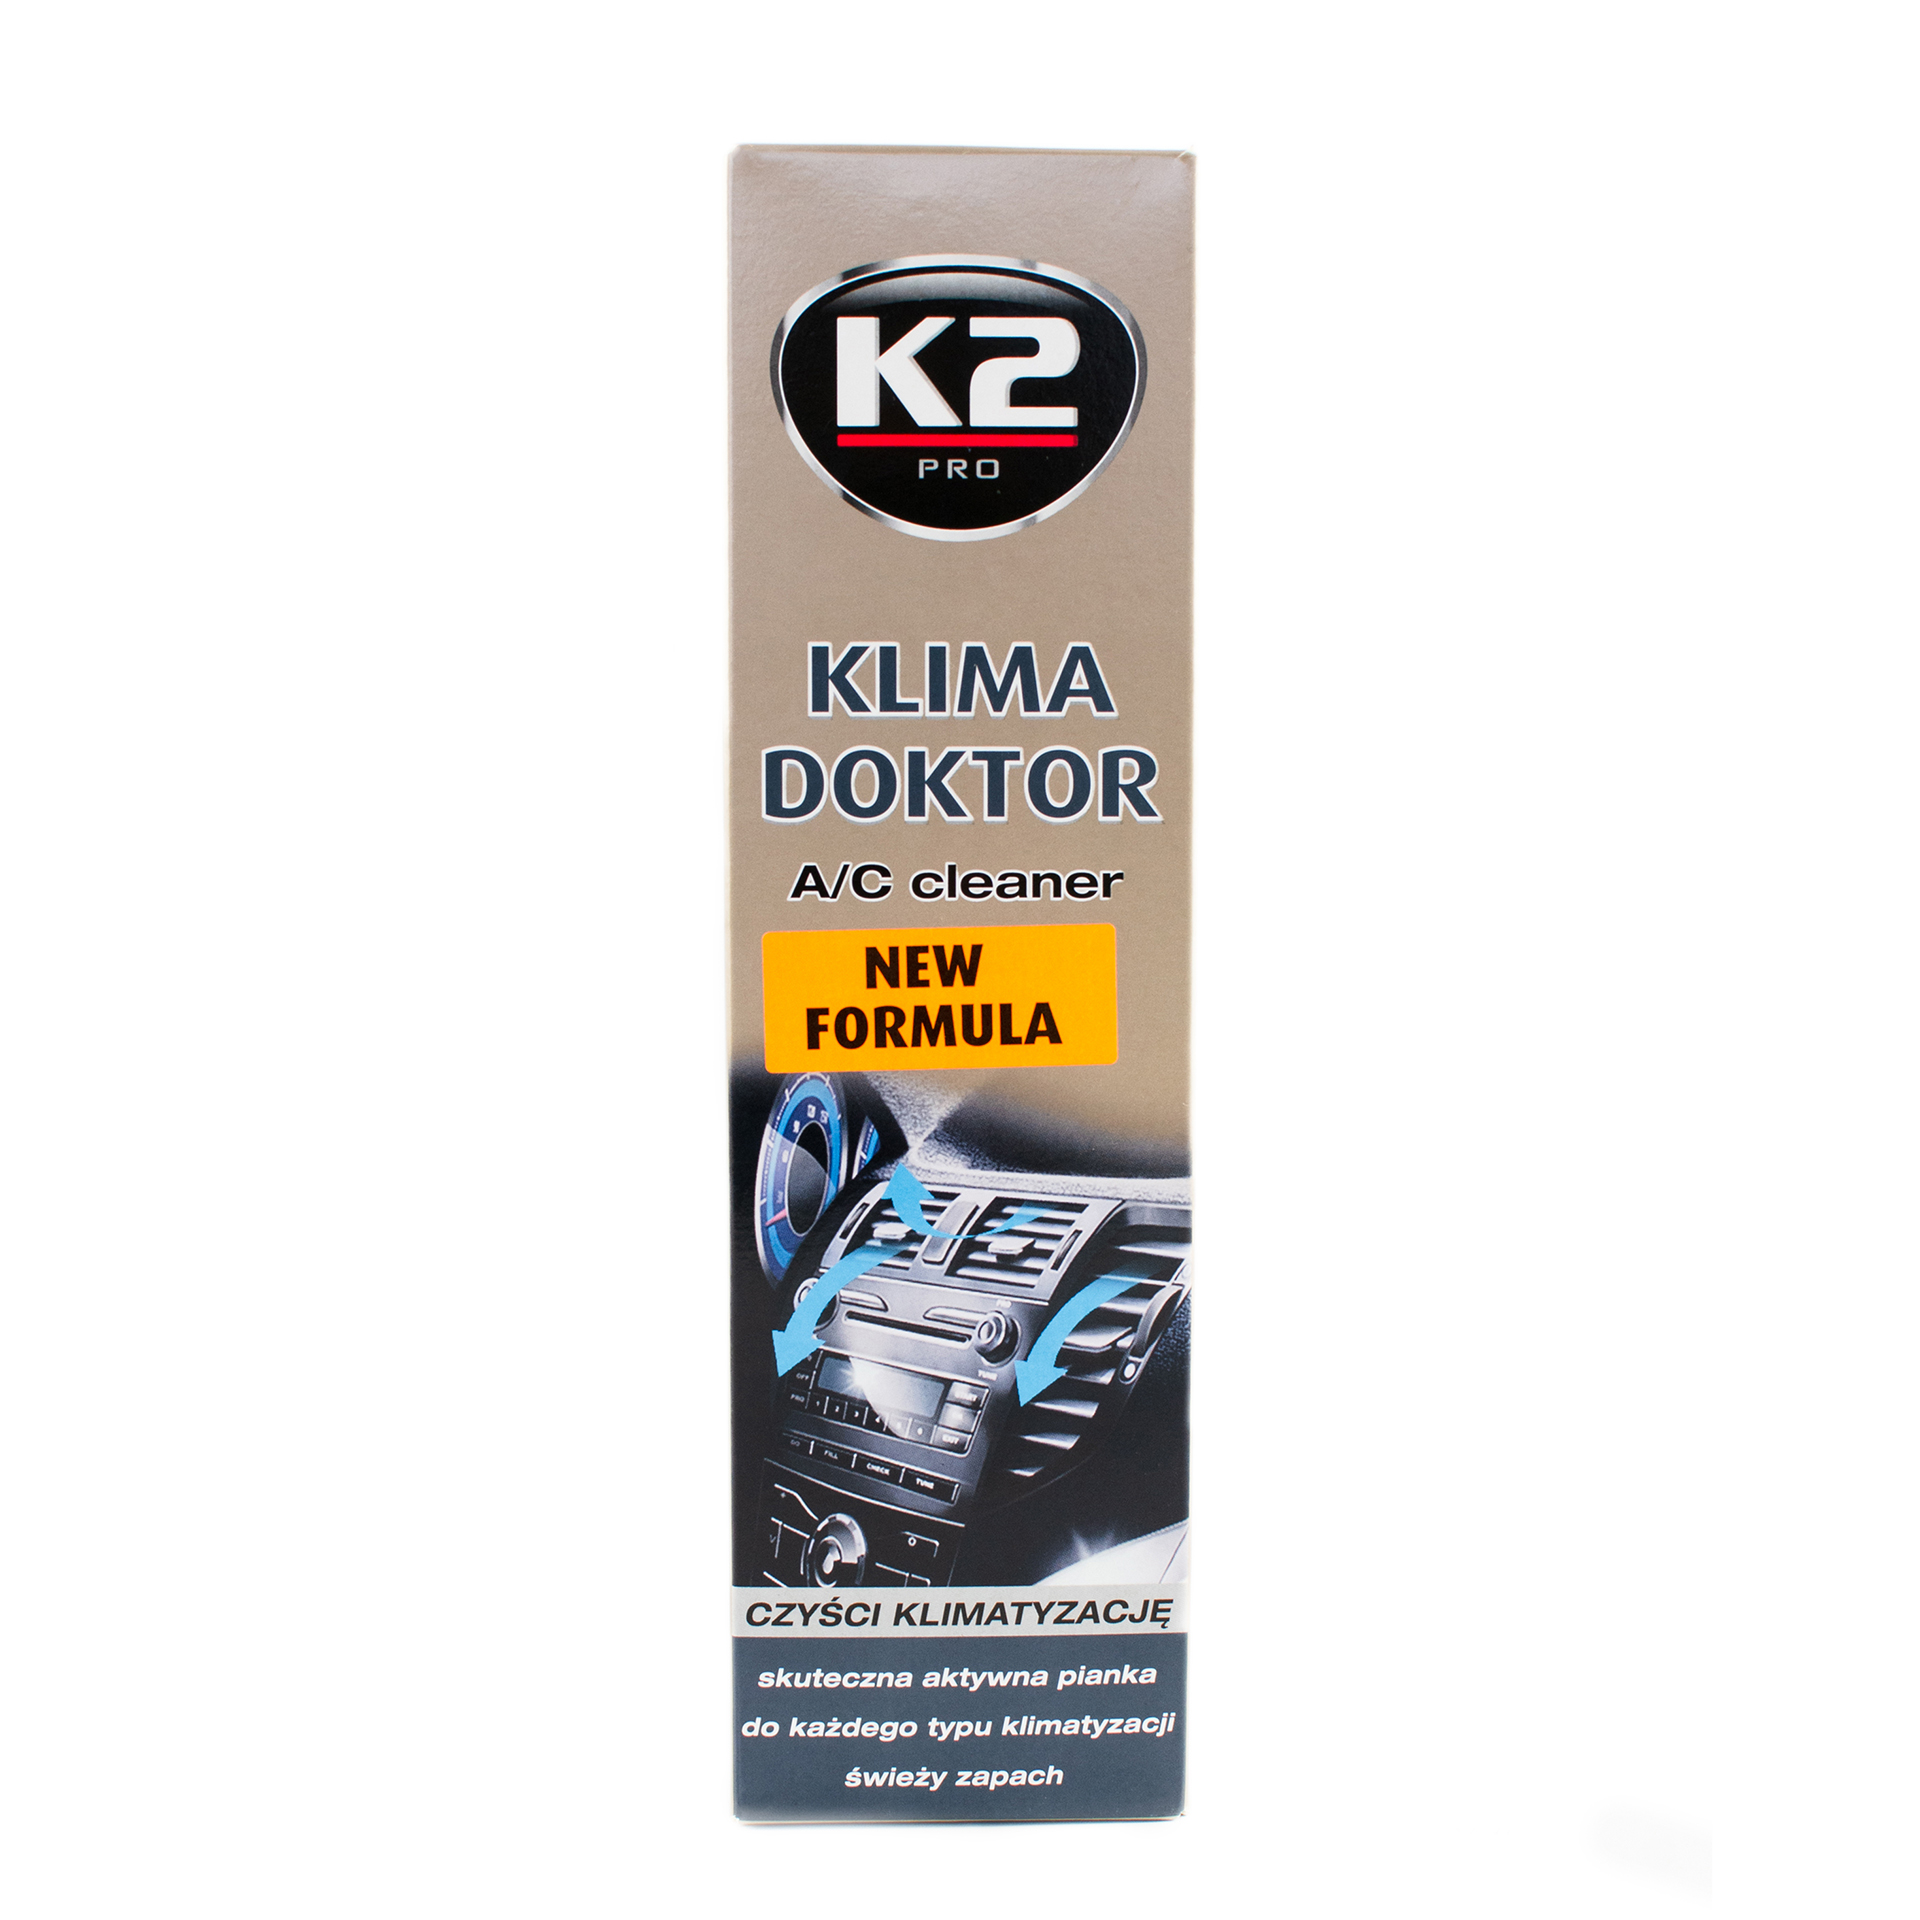 Очисник автокондиціонерів K2 Klima Doctor (аерозоль) 500мл